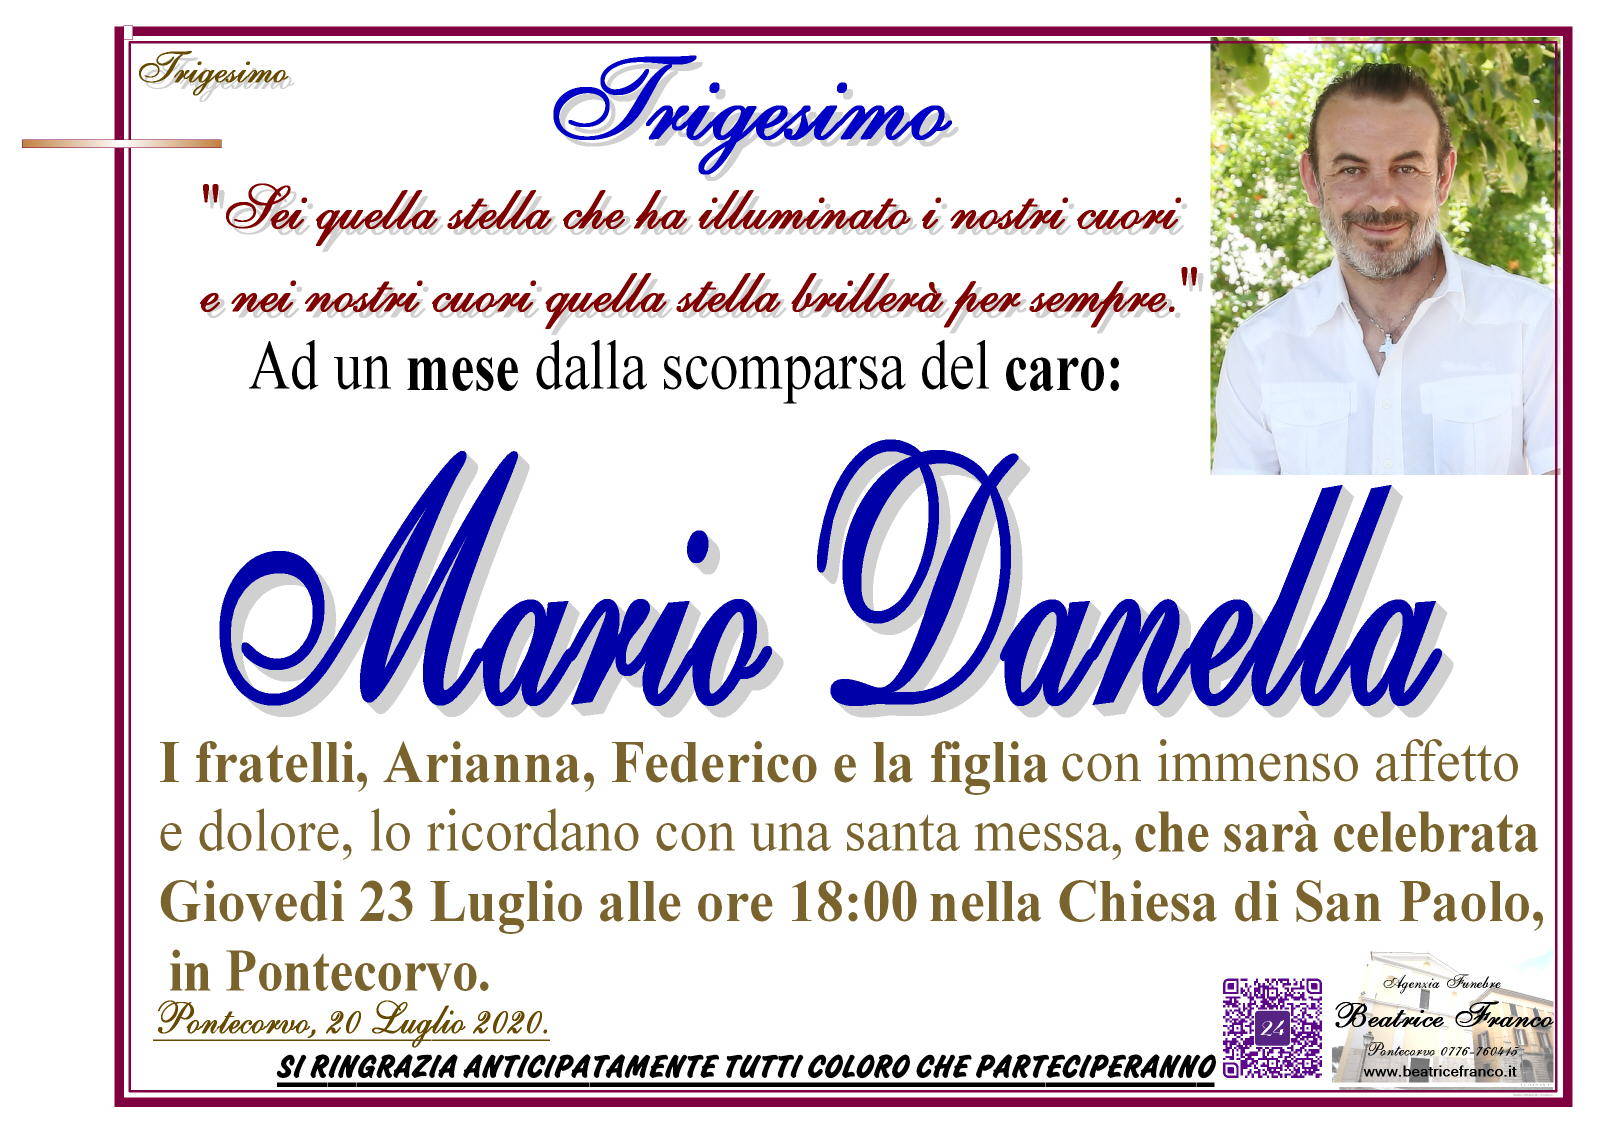 Mario Danella